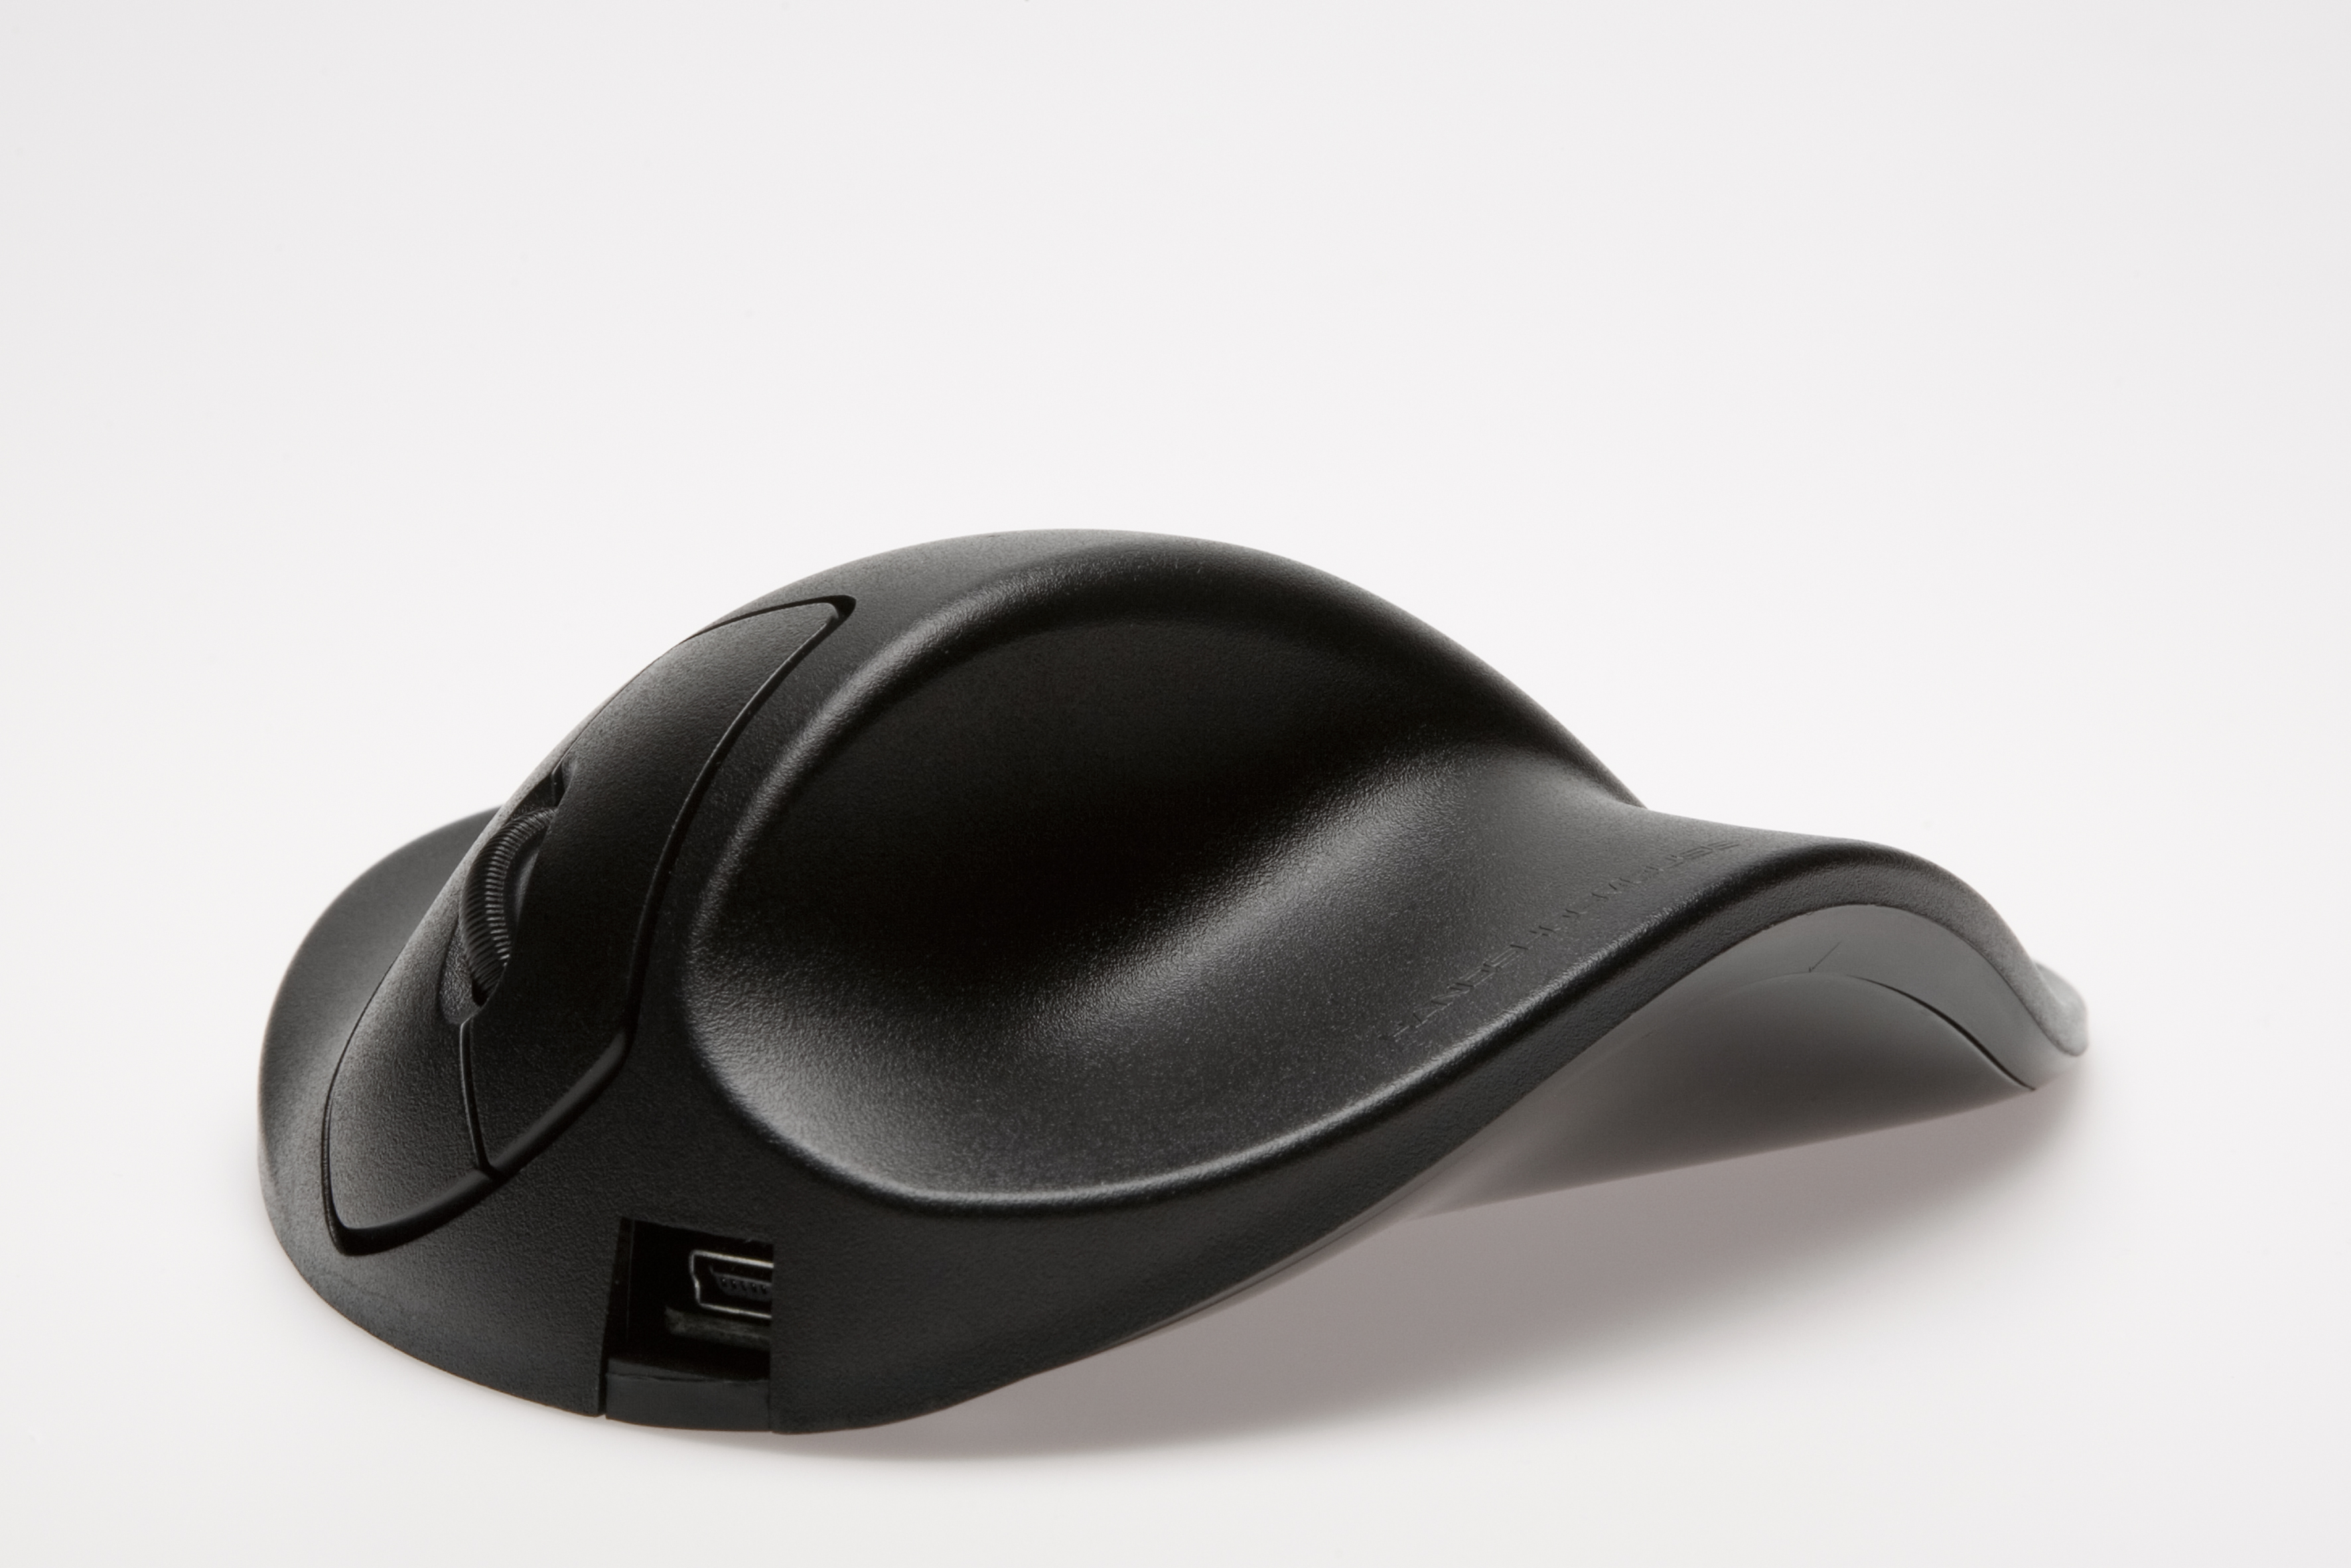 HIPPUS M2UB-LC ergonomische schwarz Maus